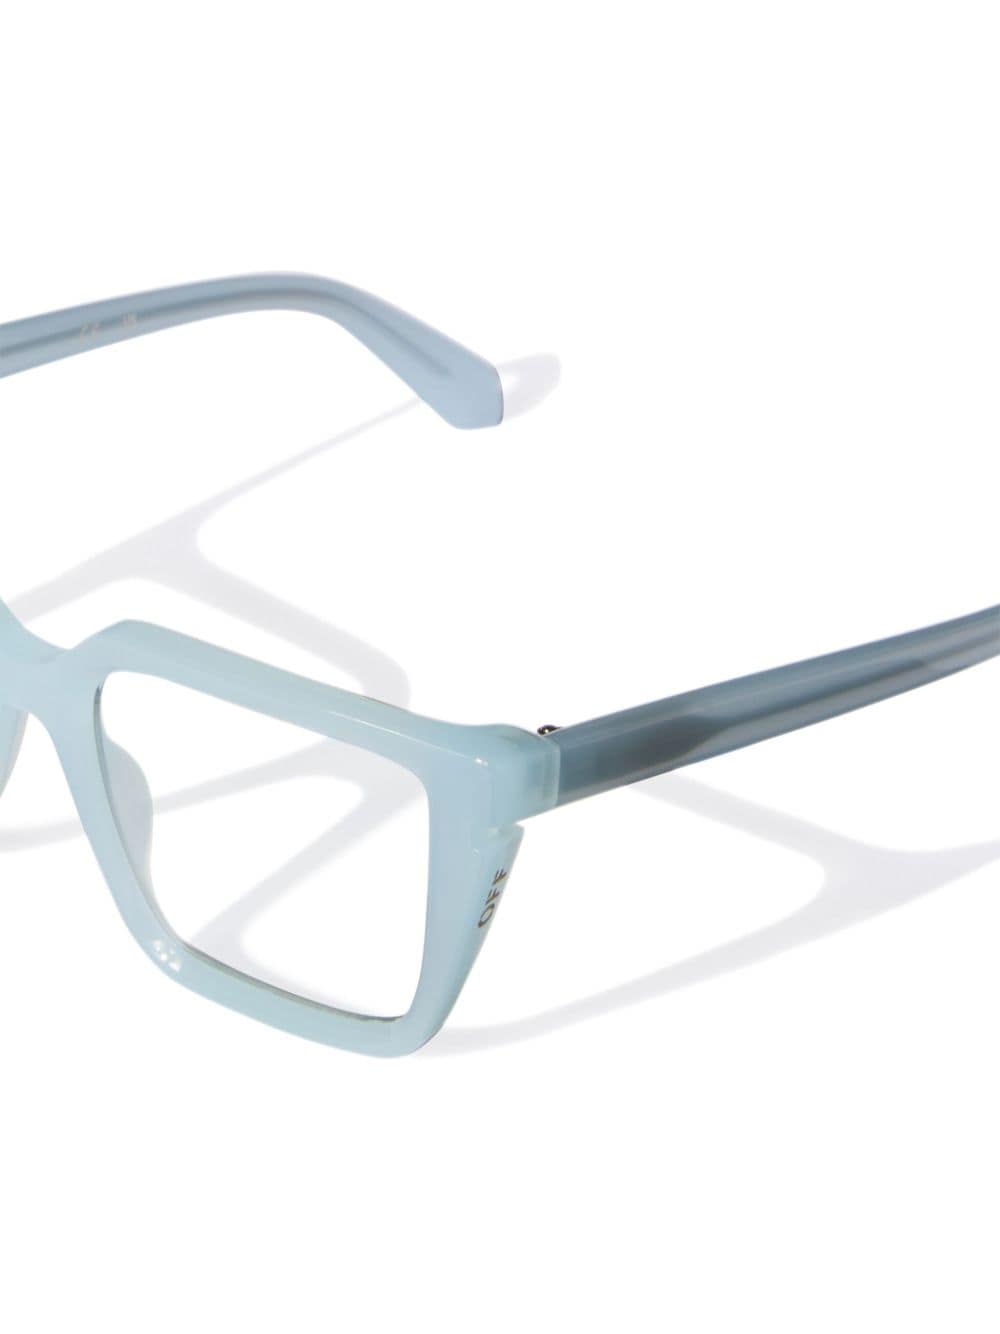 OPTICAL STYLE 52 眼镜